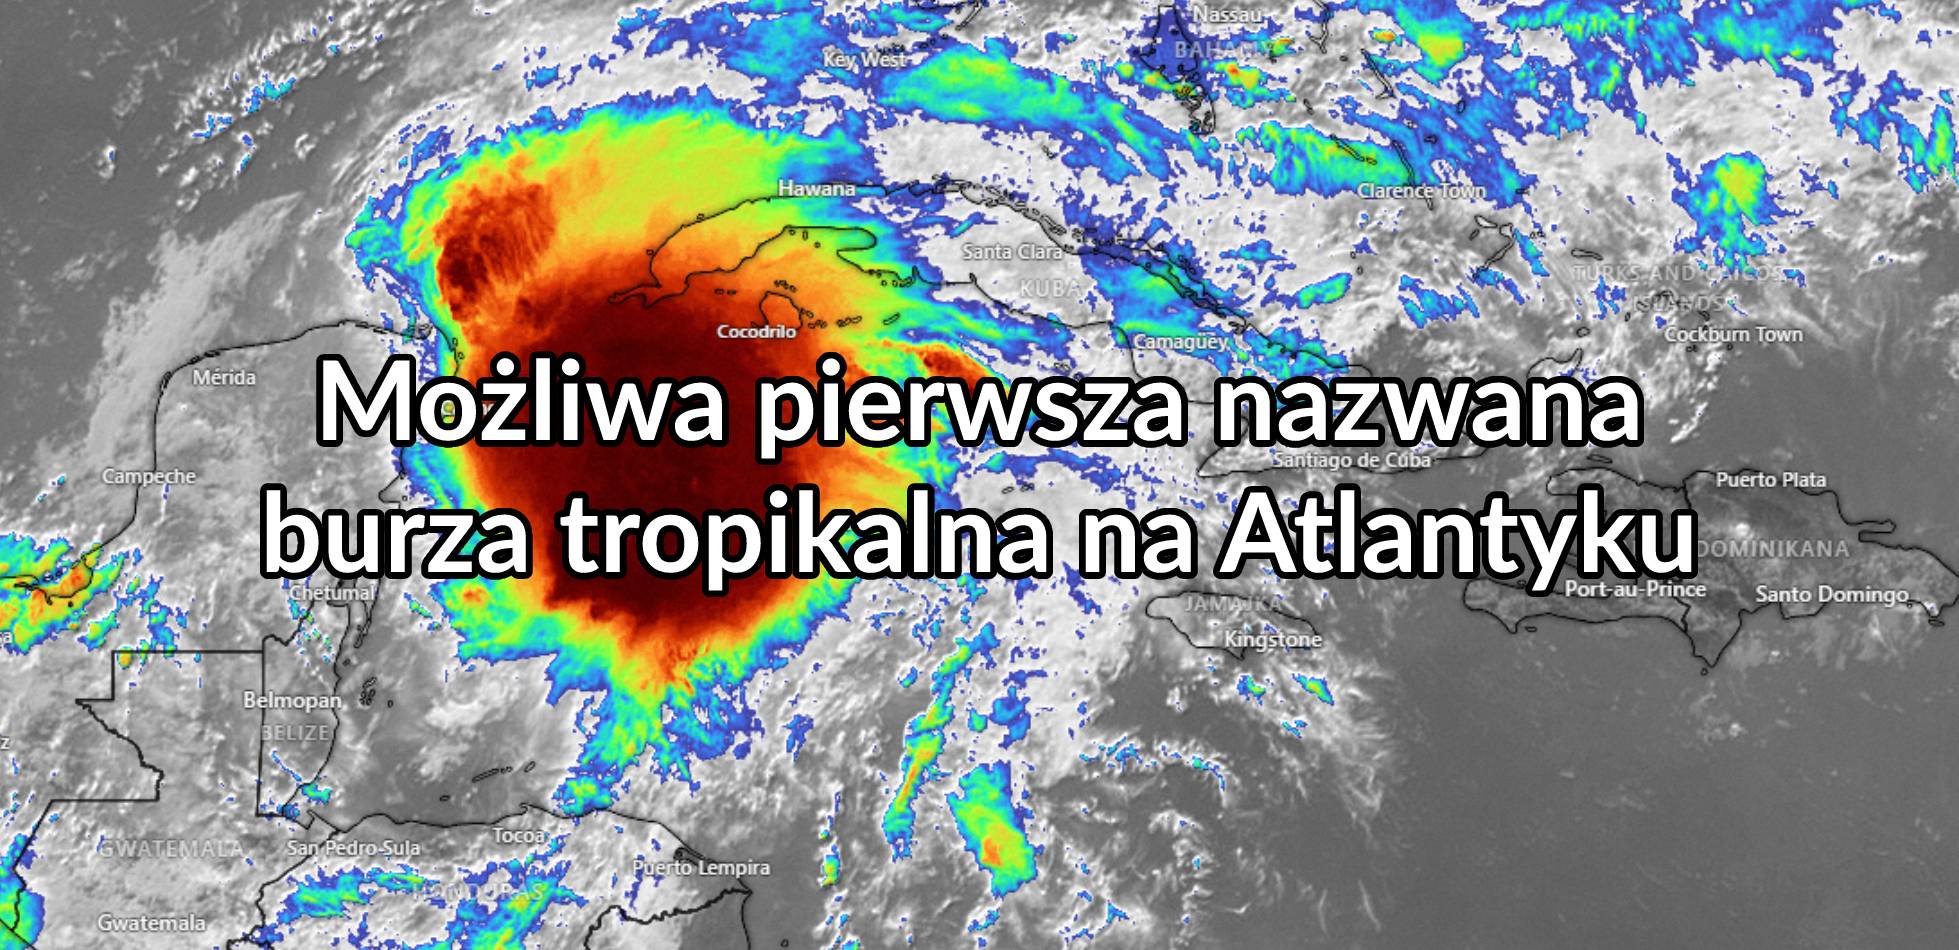 Możliwa pierwsza nazwana burza tropikalna na Atlantyku